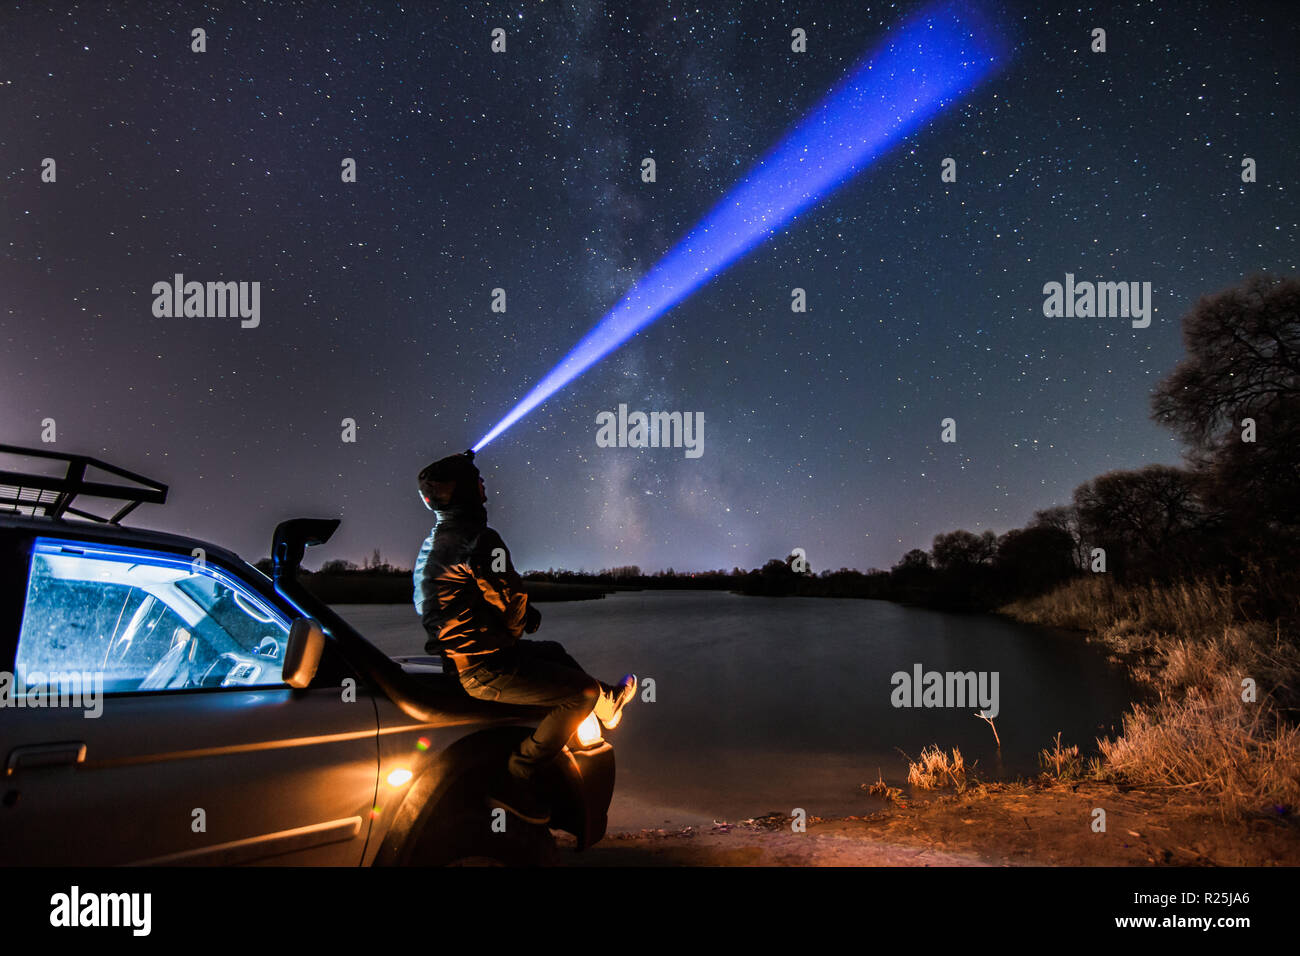 Ein Mann mit Taschenlampe auf der Suche uptsairs in den Nachthimmel und Milchstraße. Einige Körner mit hohen ISO-Werten vorhanden ist Stockfoto